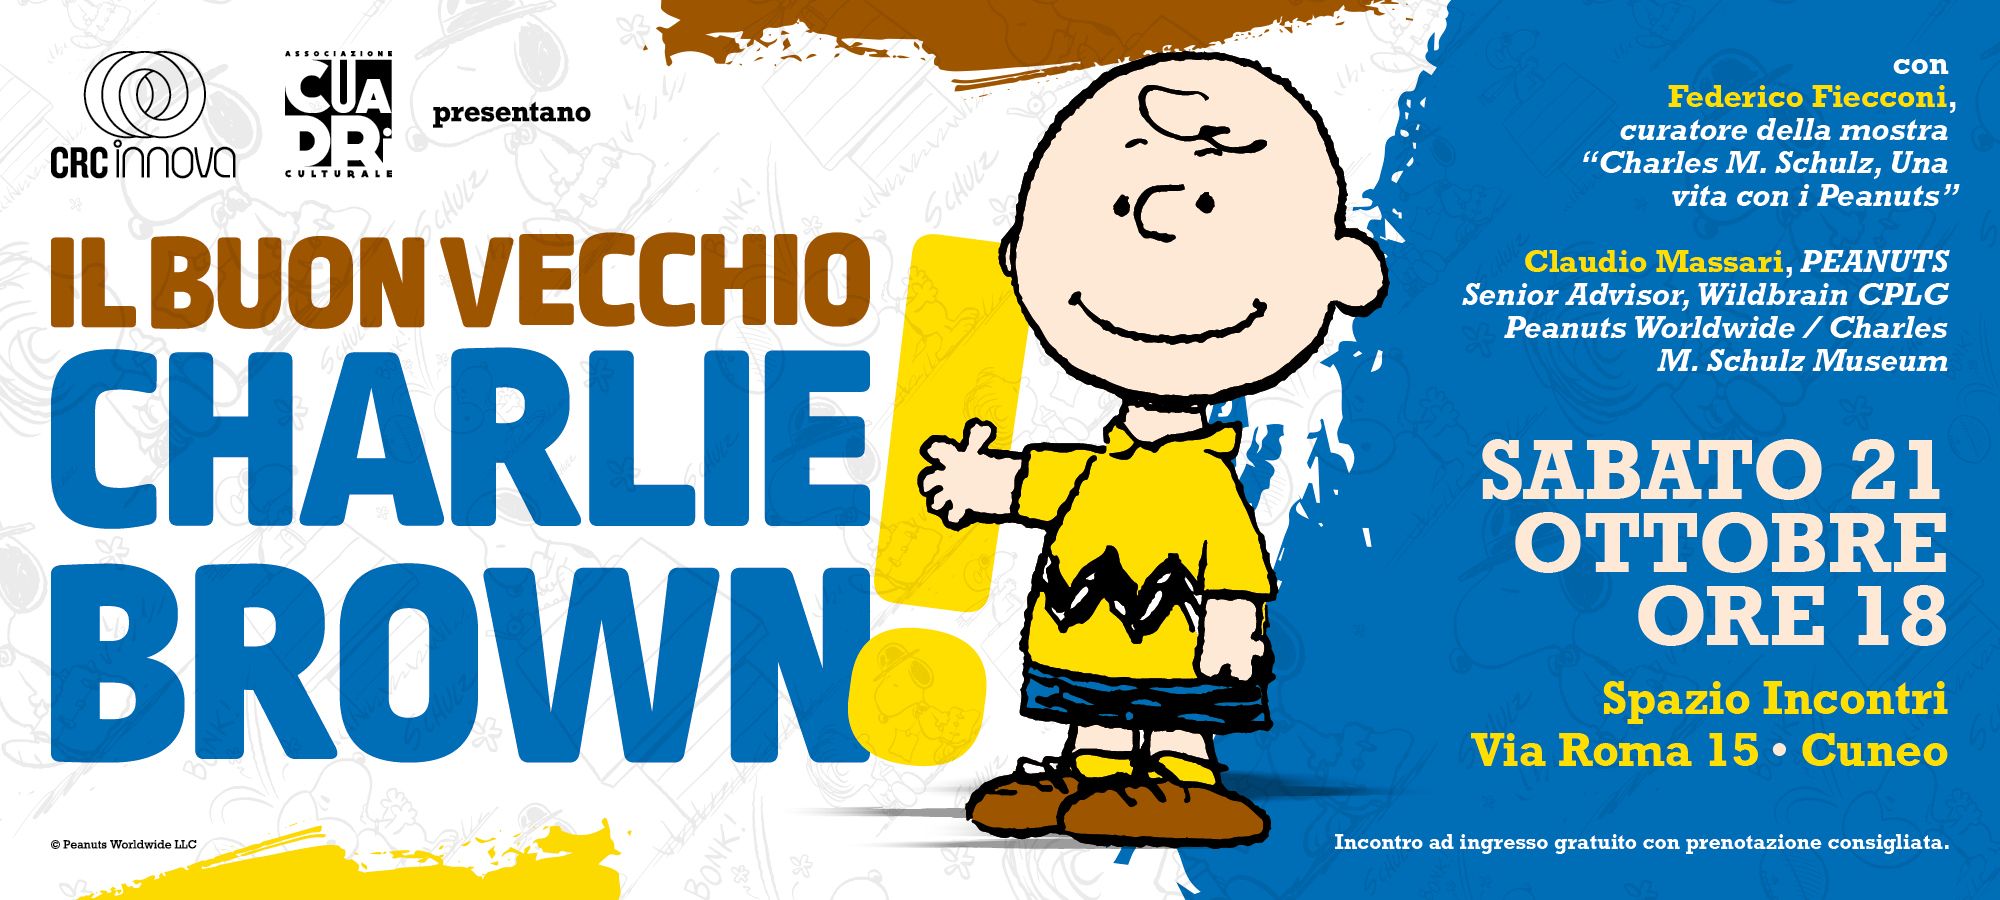 Il buon vecchio Charlie Brown